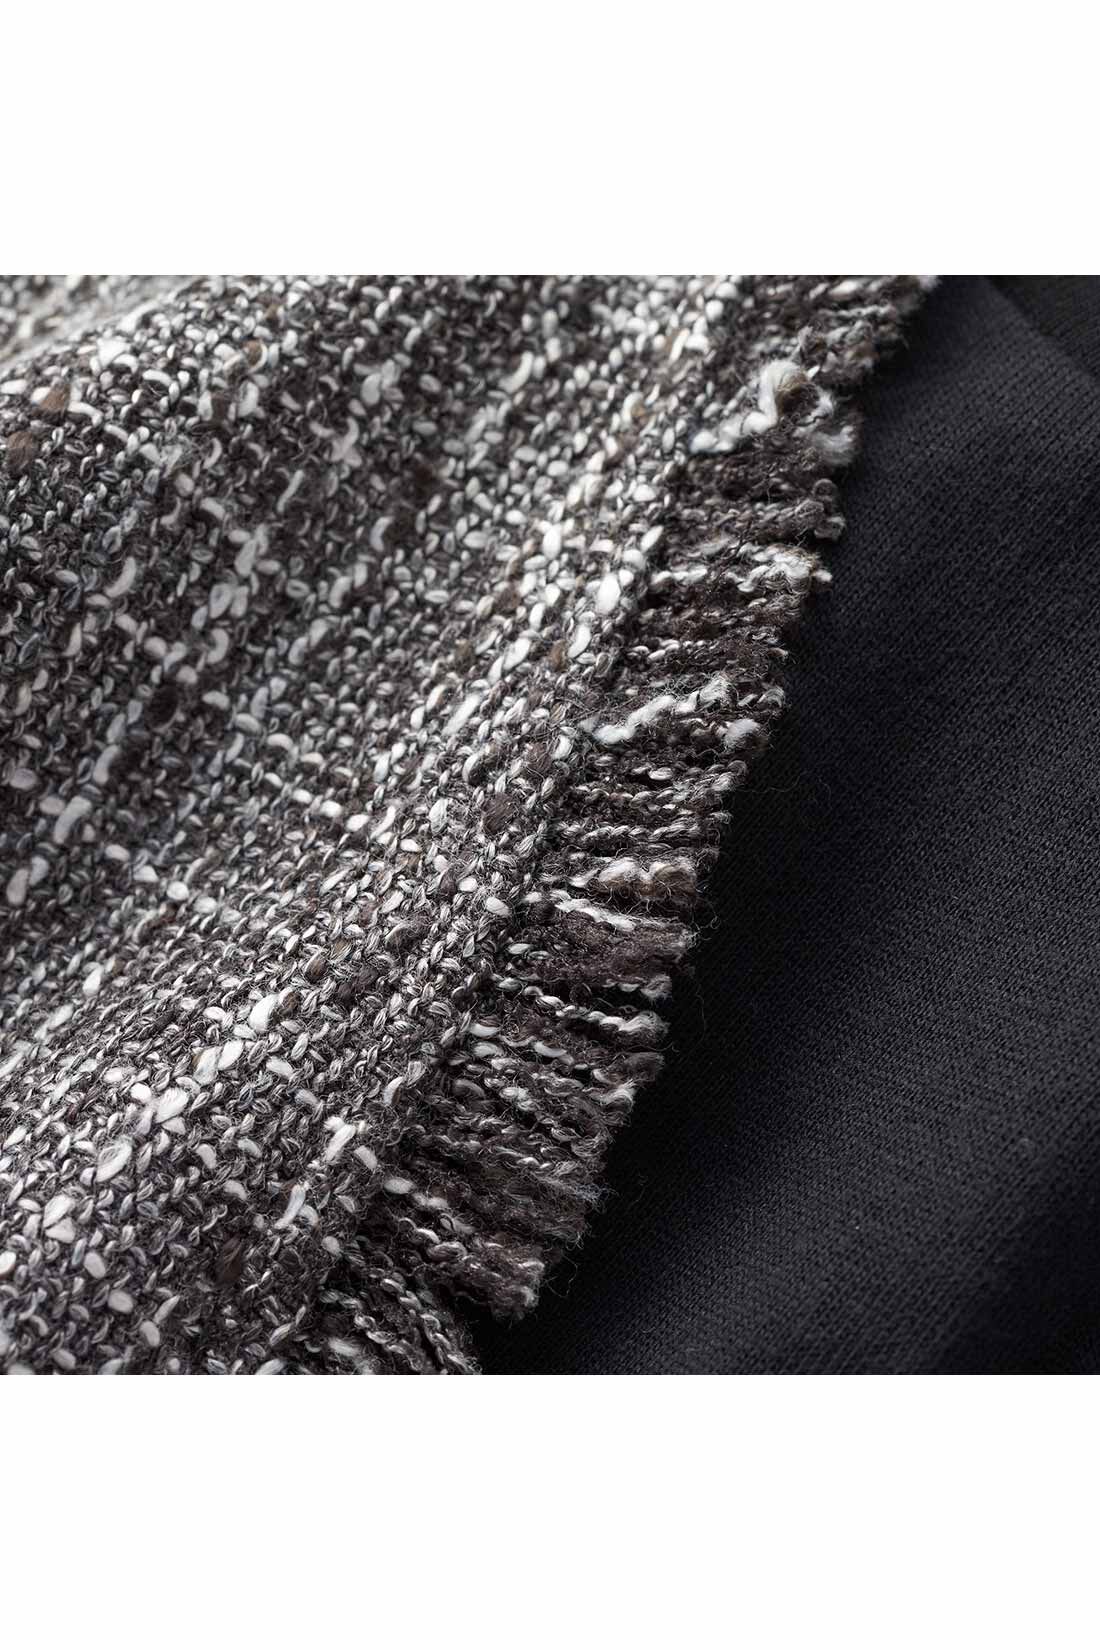 IEDIT|IEDIT[イディット]　こなれコーデがかなう ツイードベストと長袖ロゴTシャツのセット〈ベージュ〉|数種の糸で表情豊かに織り上げたツイード素材。ネックやアームホールまわりのフリンジがこなれた印象に。